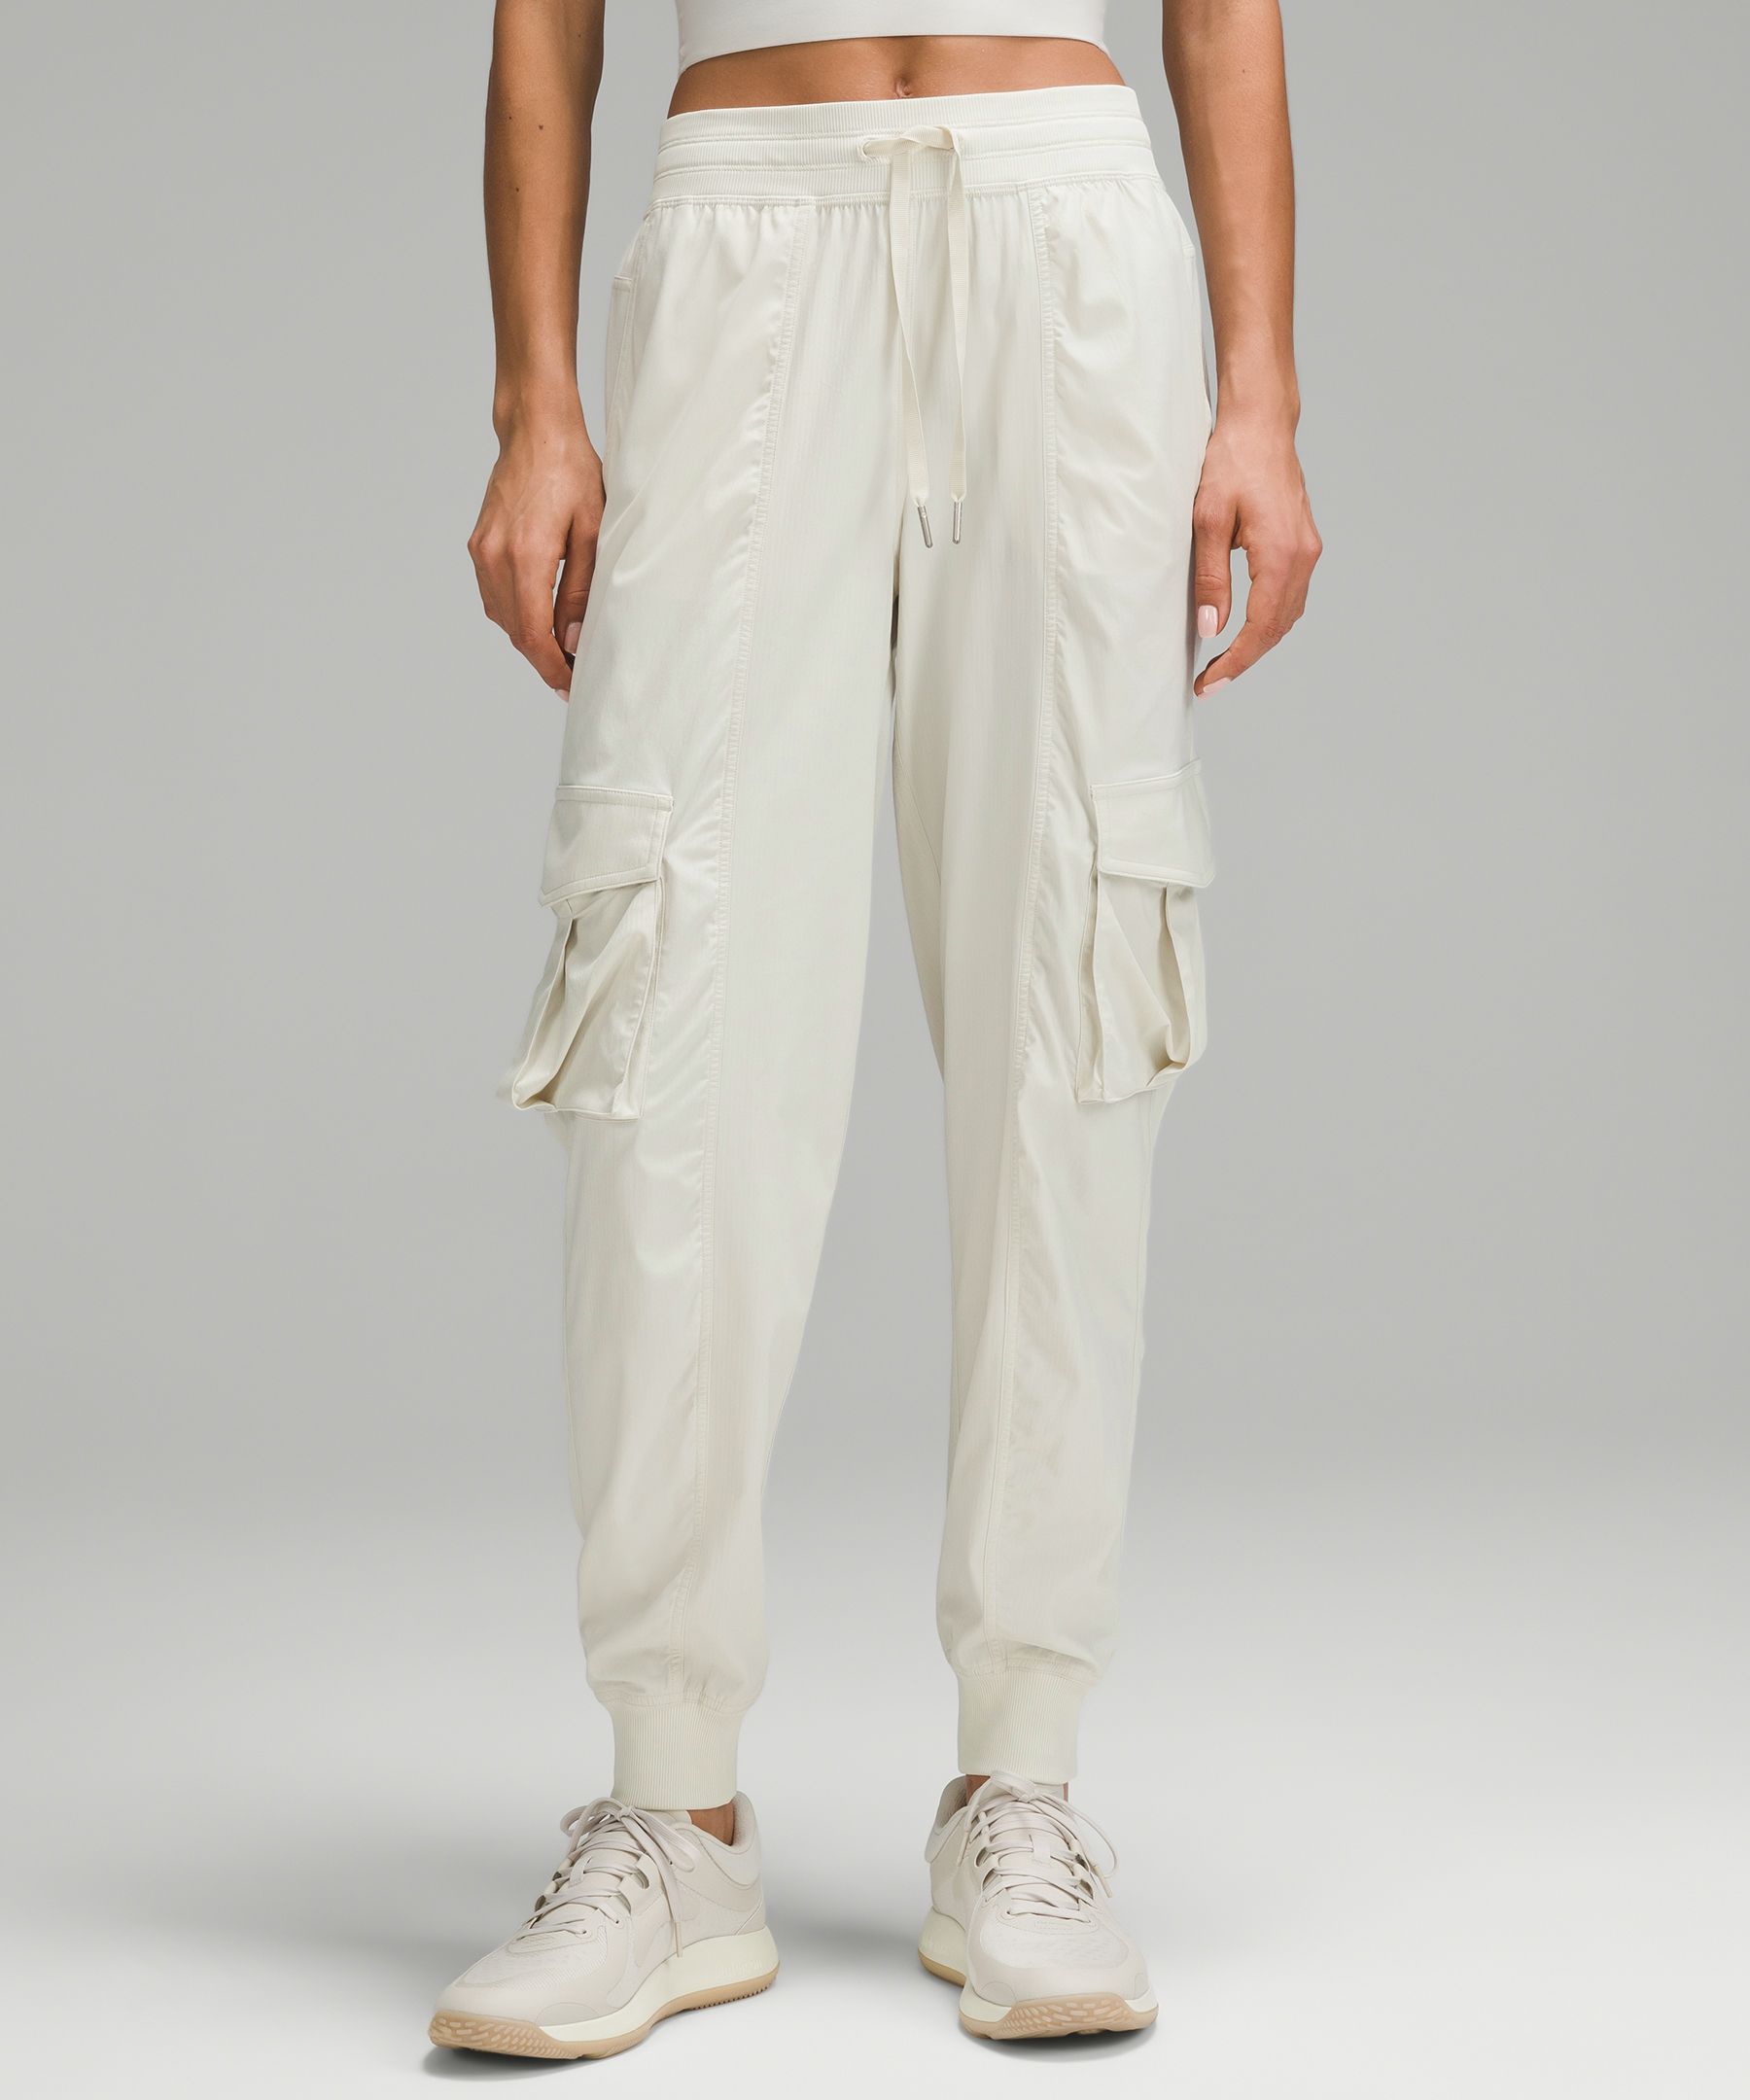 white dance studio pants sizing｜TikTok Search